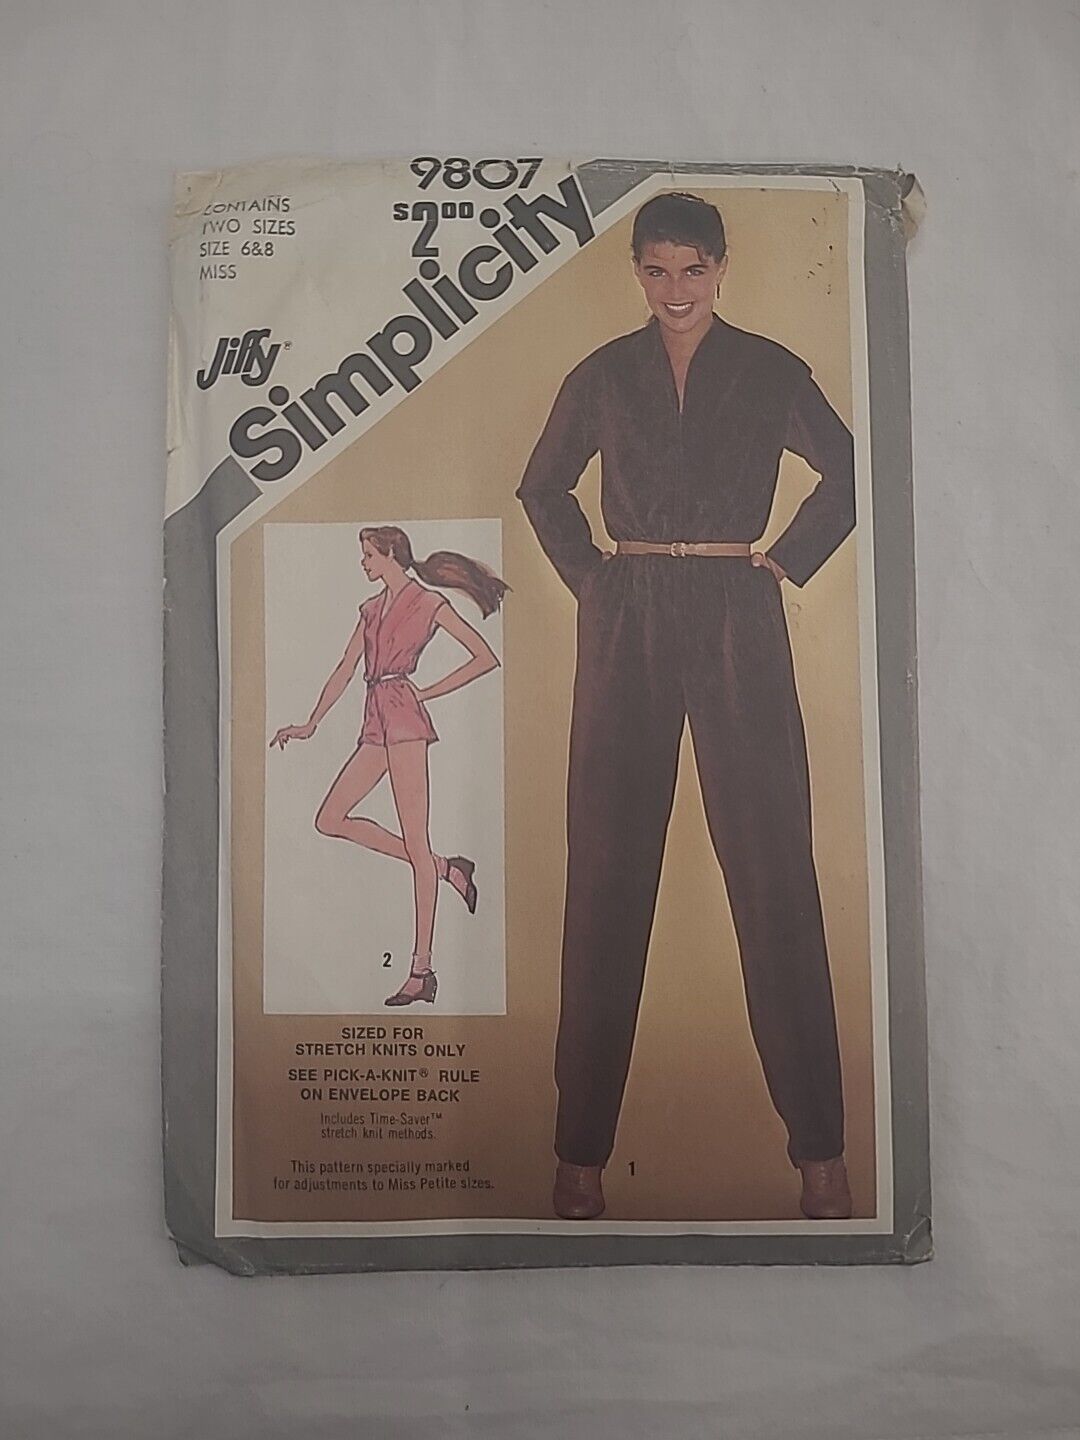 Vintage 1980s Simplicity Jumpsuit Pattern #9807 Size 6-8 Miss - Uncut